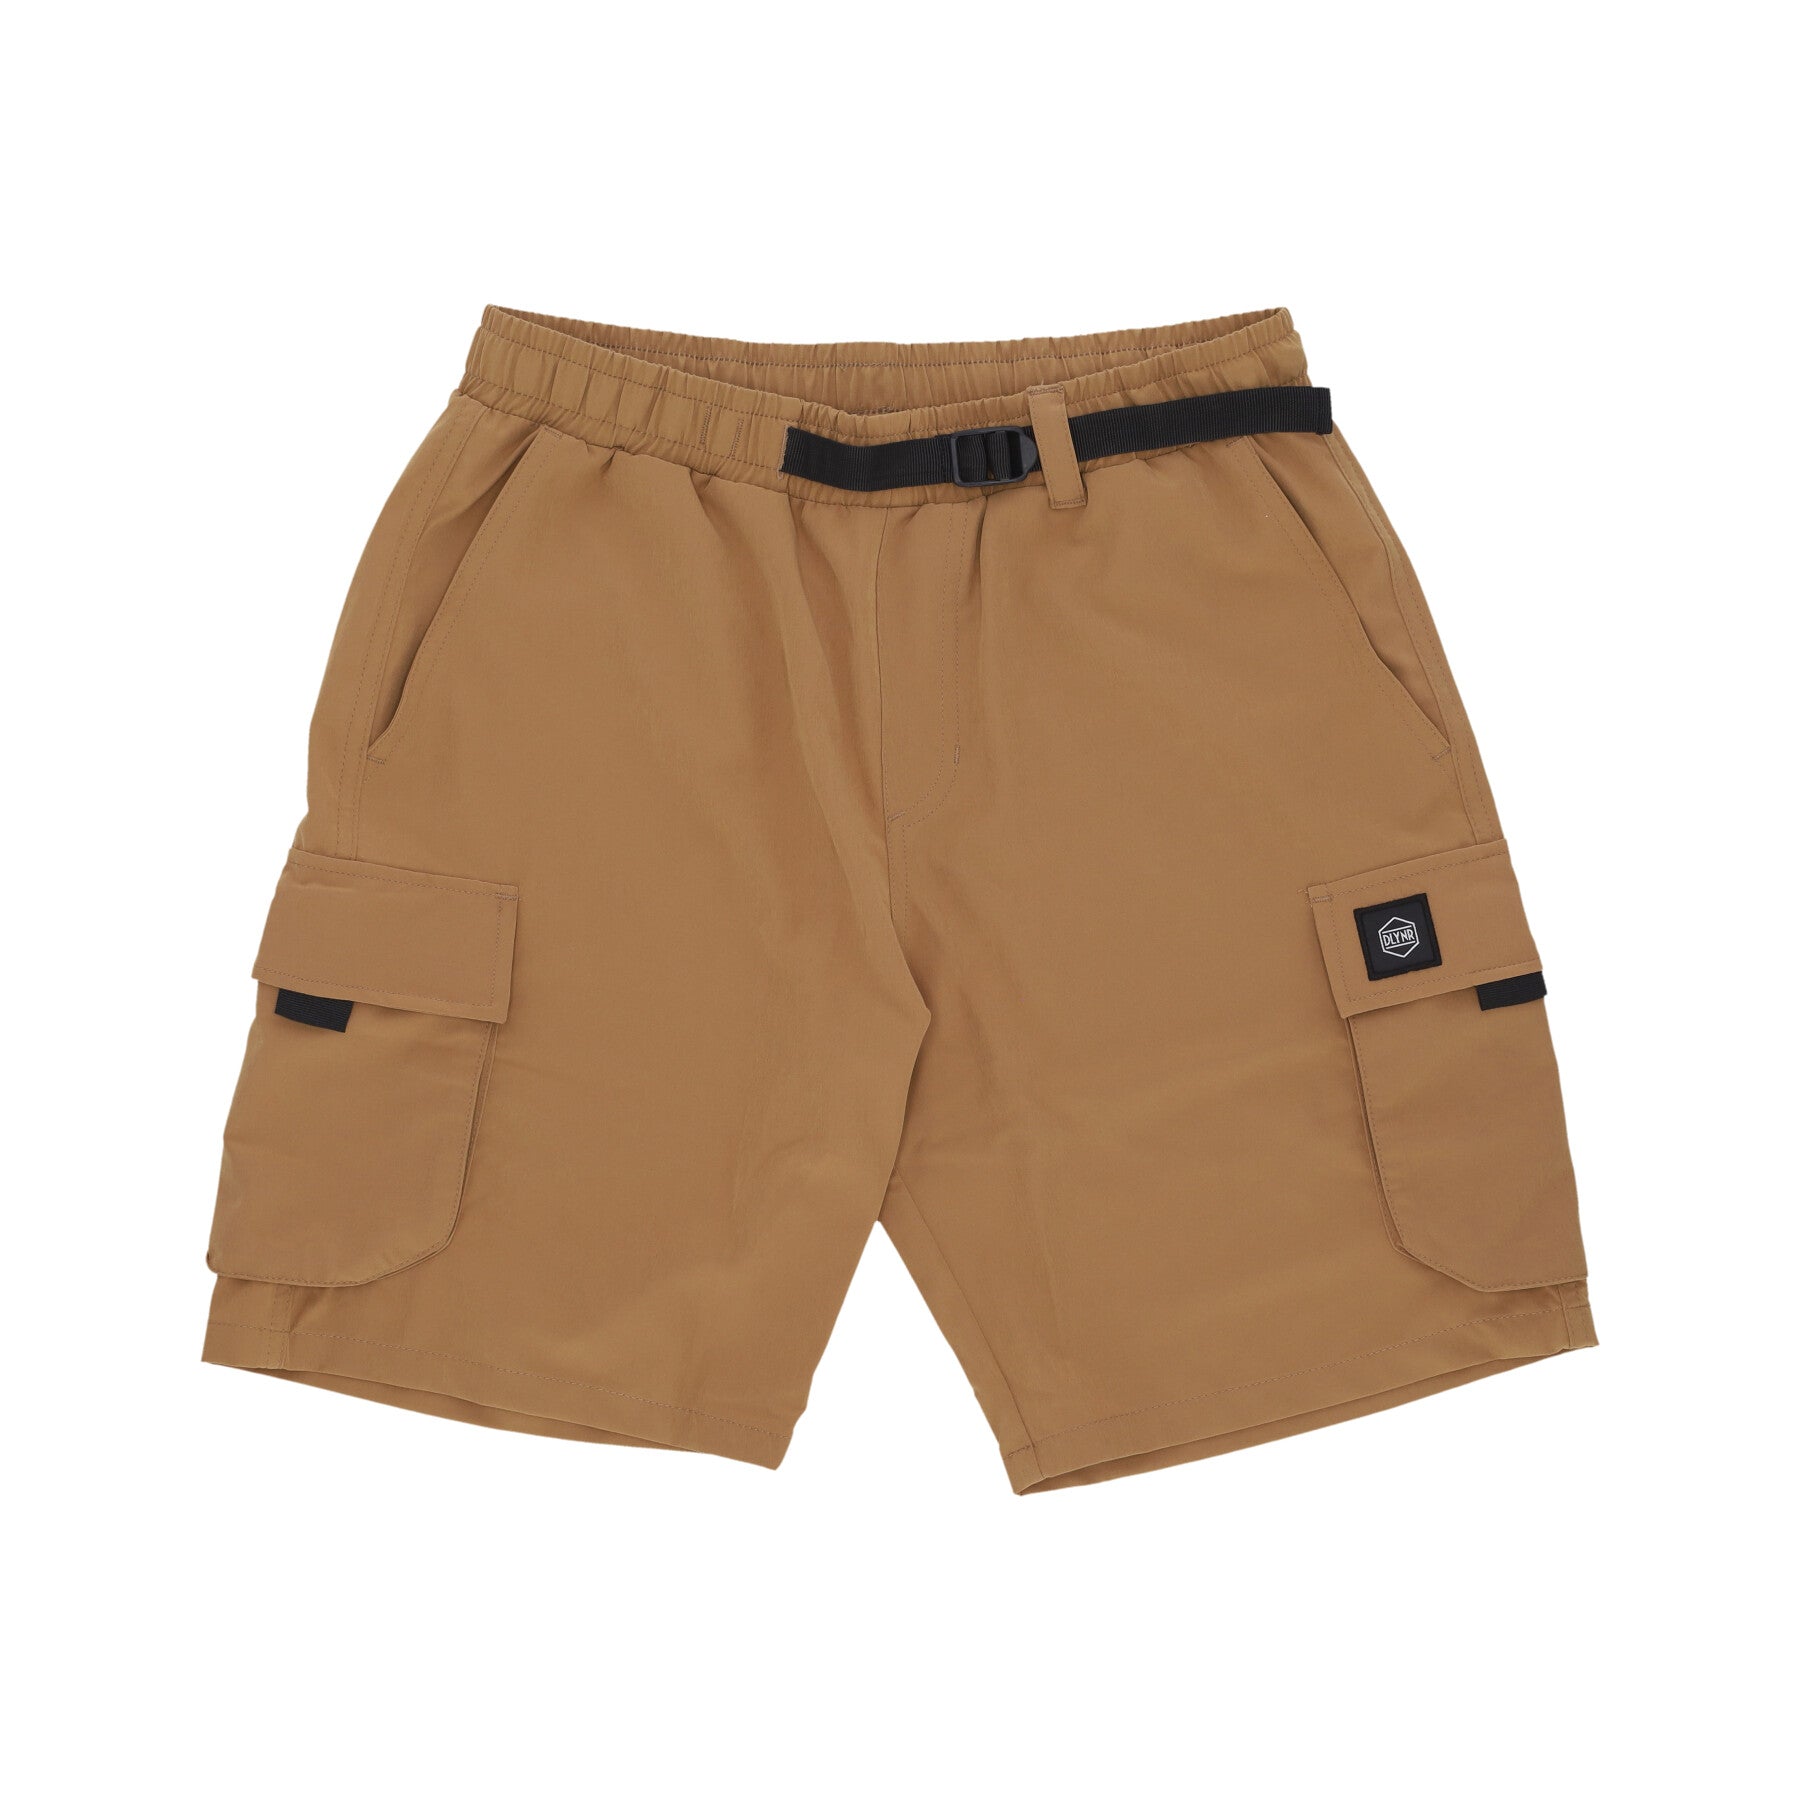 Pantalone Corto Uomo Techno Cargo Shorts Beige PA144-PO-02